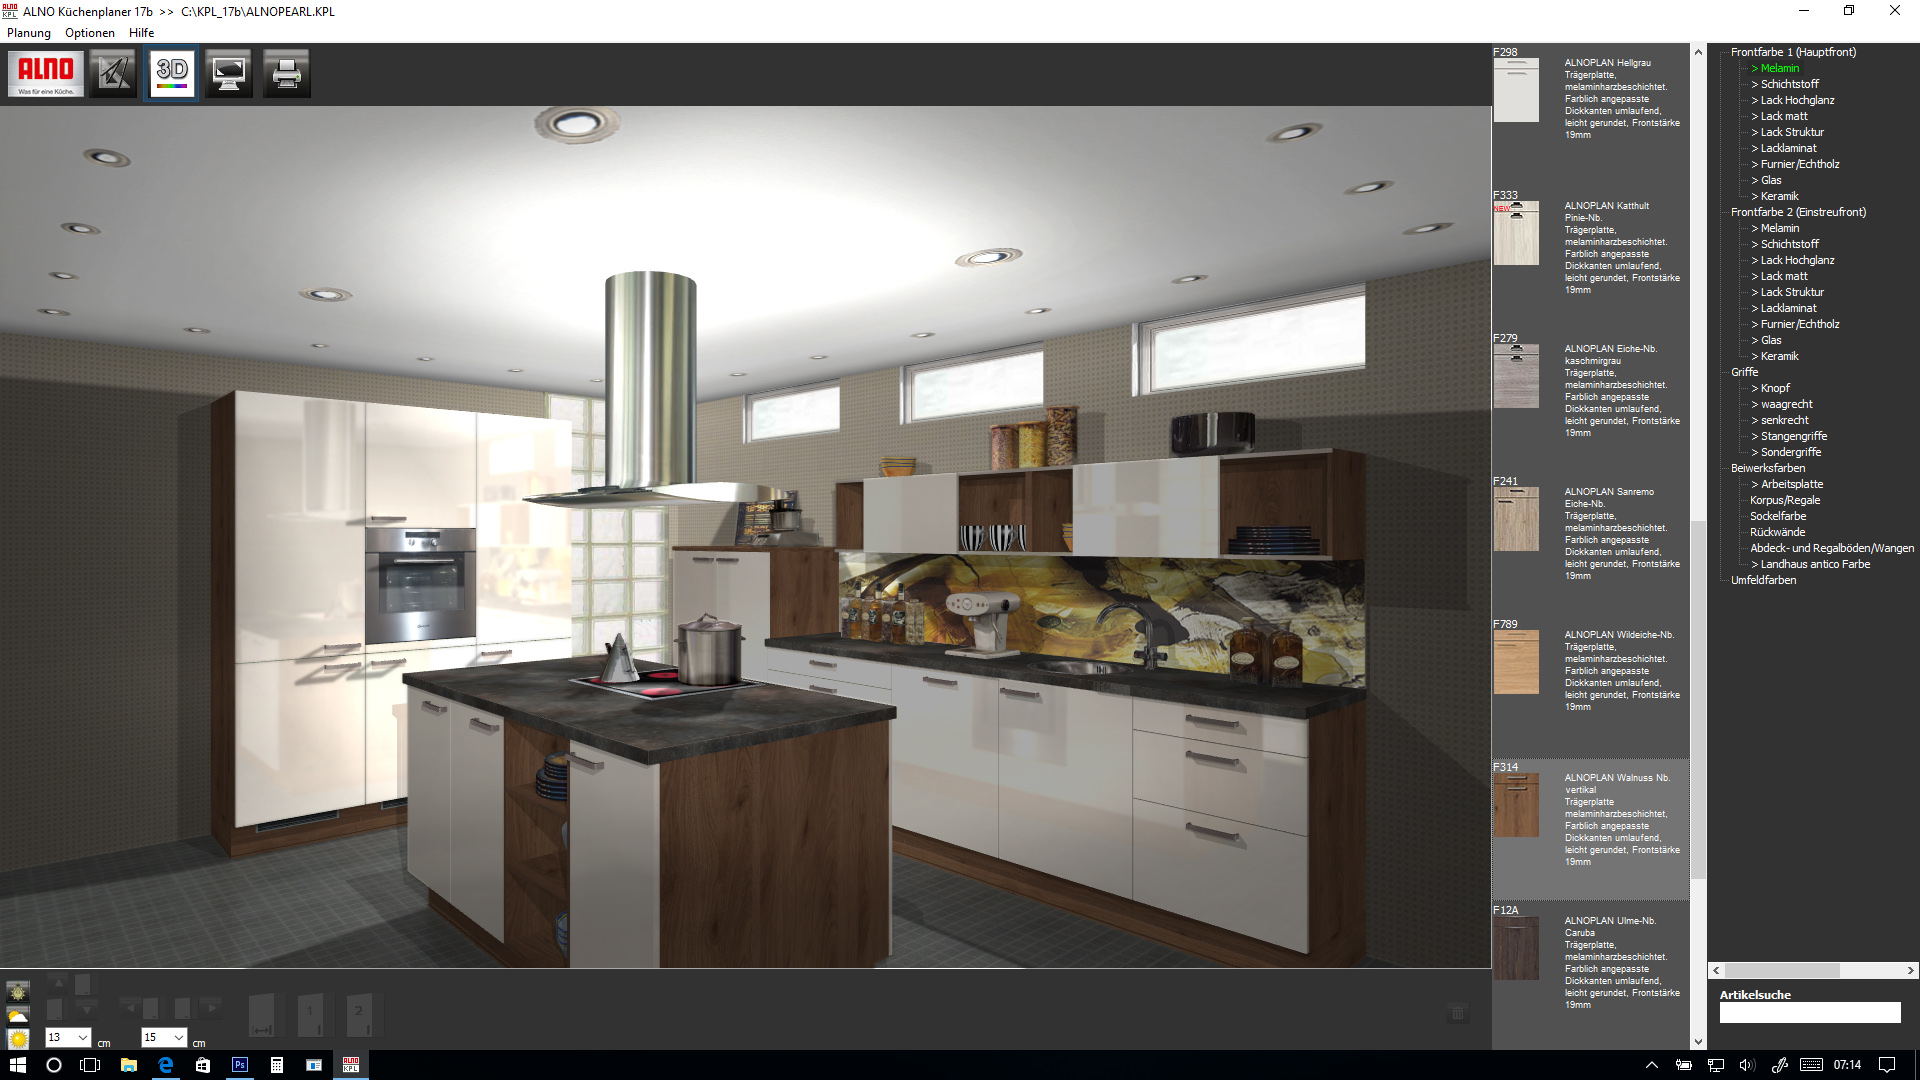 alno ag online kitchen design software